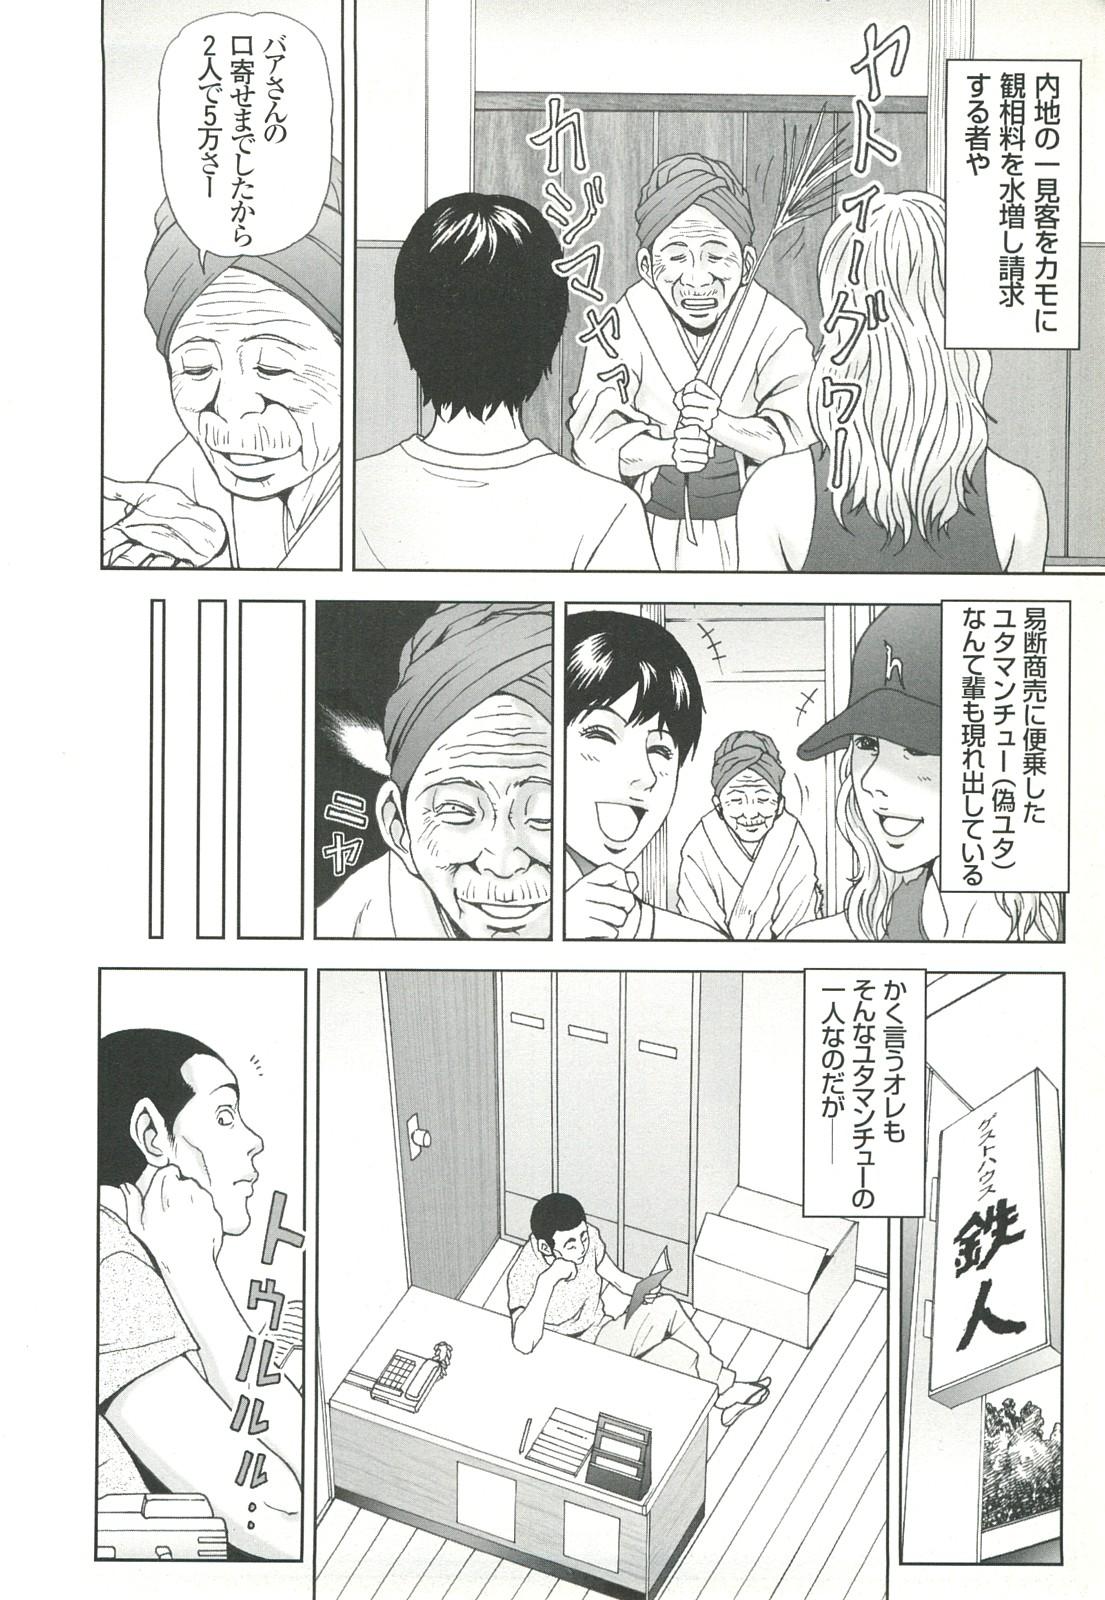 コミック裏モノJAPAN Vol.18 今井のりたつスペシャル号 43